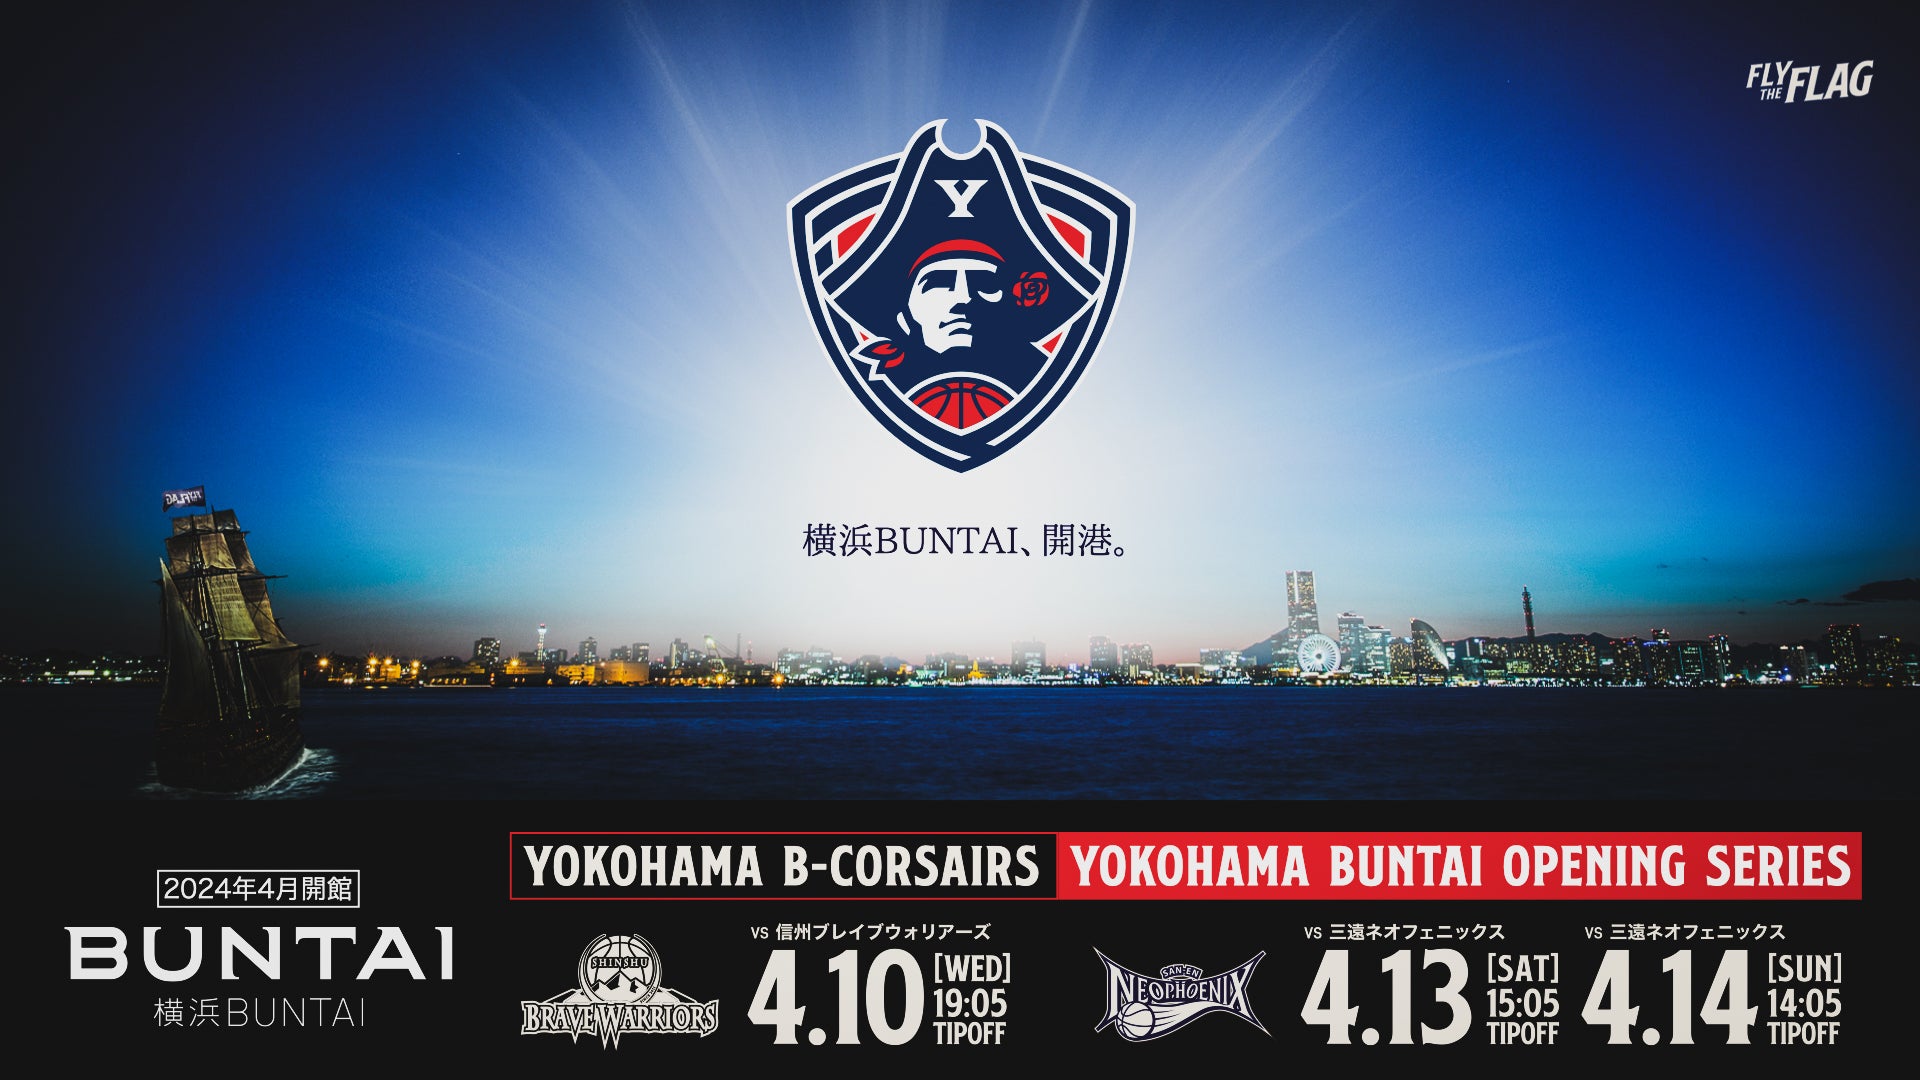 横浜BUNTAI開催試合各種情報お知らせスケジュール